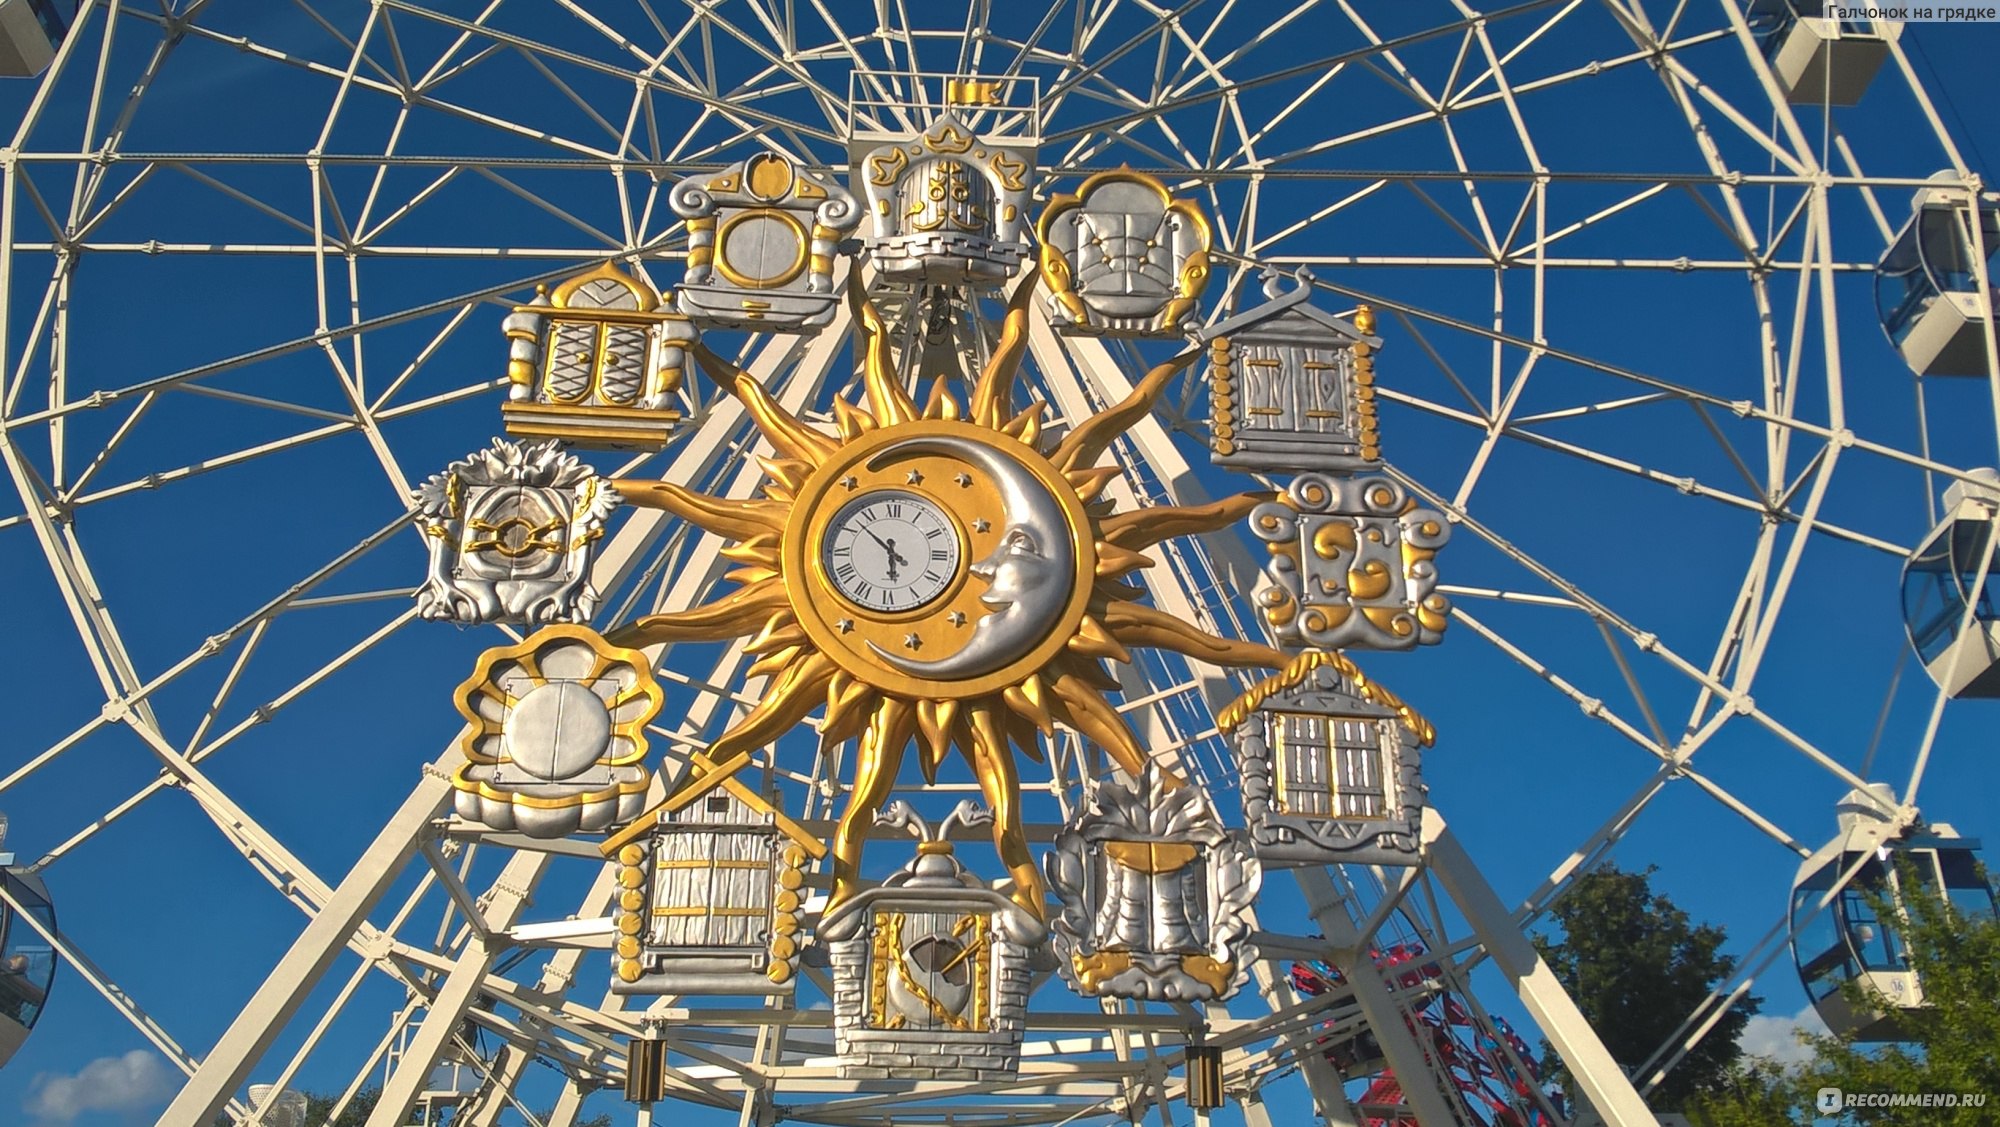 Тихие часы в тюмени. Цветной бульвар Тюмень аттракционы. Часы на Цветном бульваре в Тюмени. Парк часов Тюмень. Самый большой парк в Тюмени.